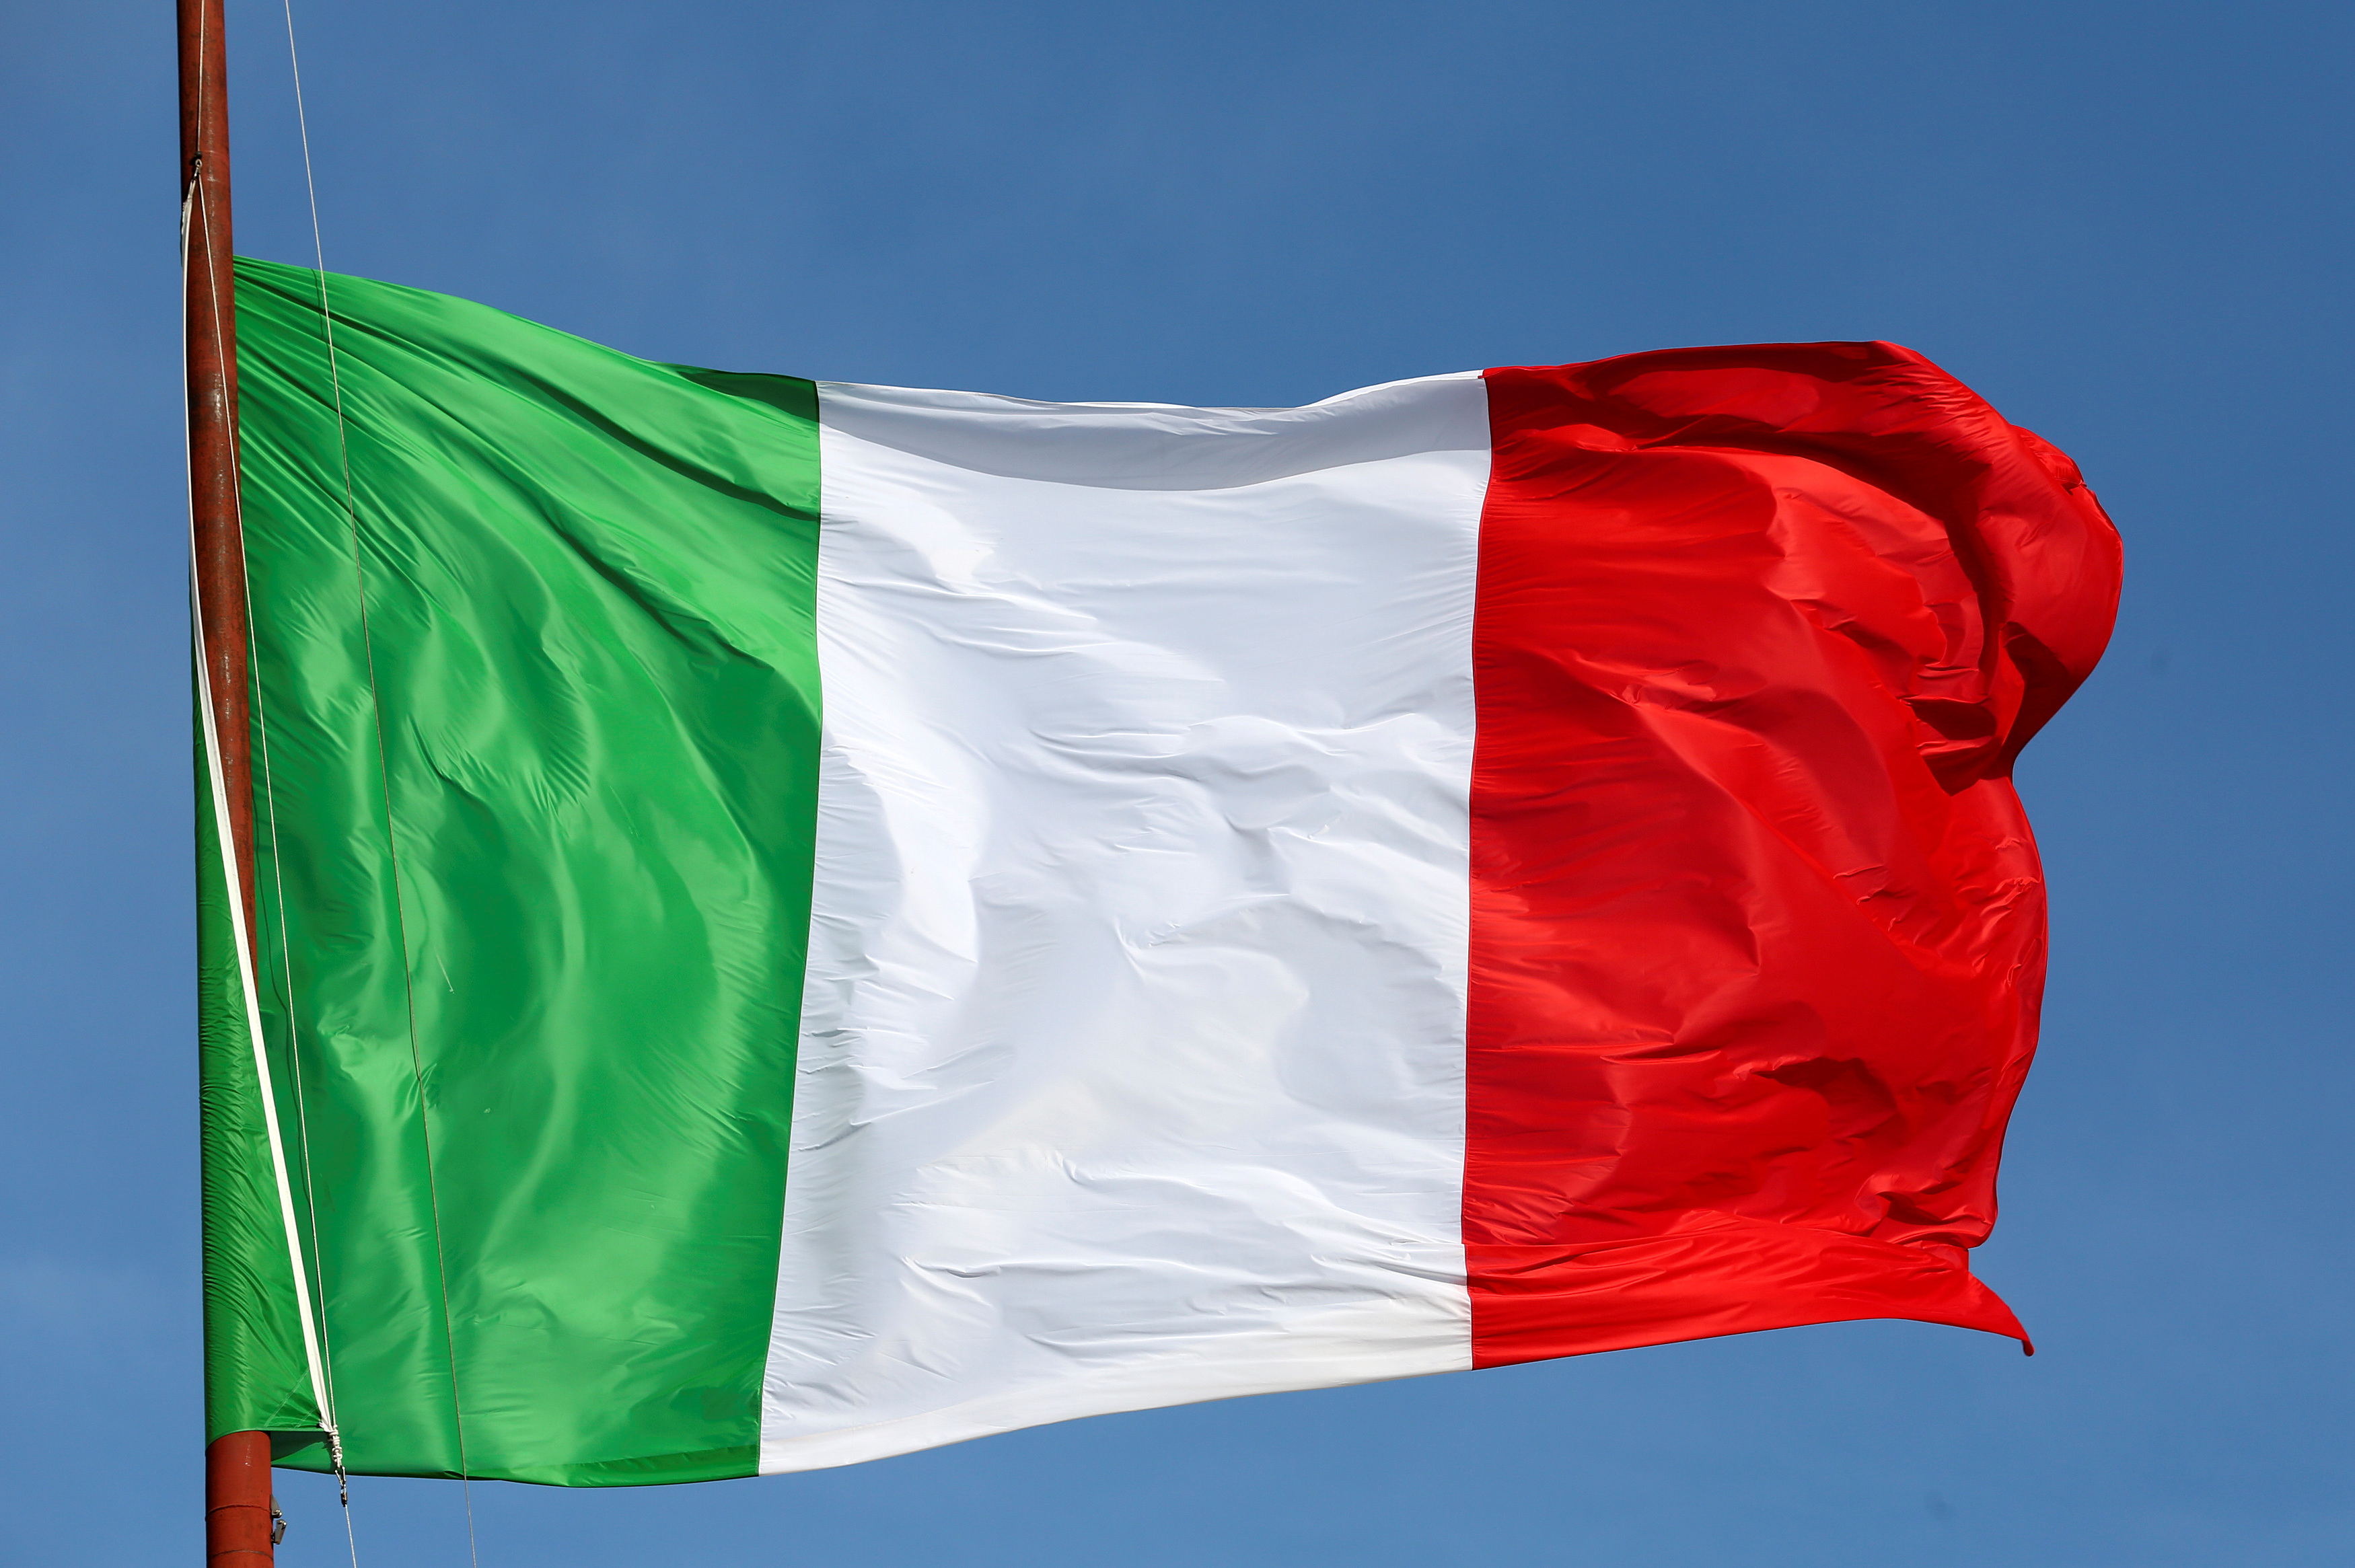 Almeno 20 persone sono morte nella caduta di un autobus italiano da un ponte a Venezia